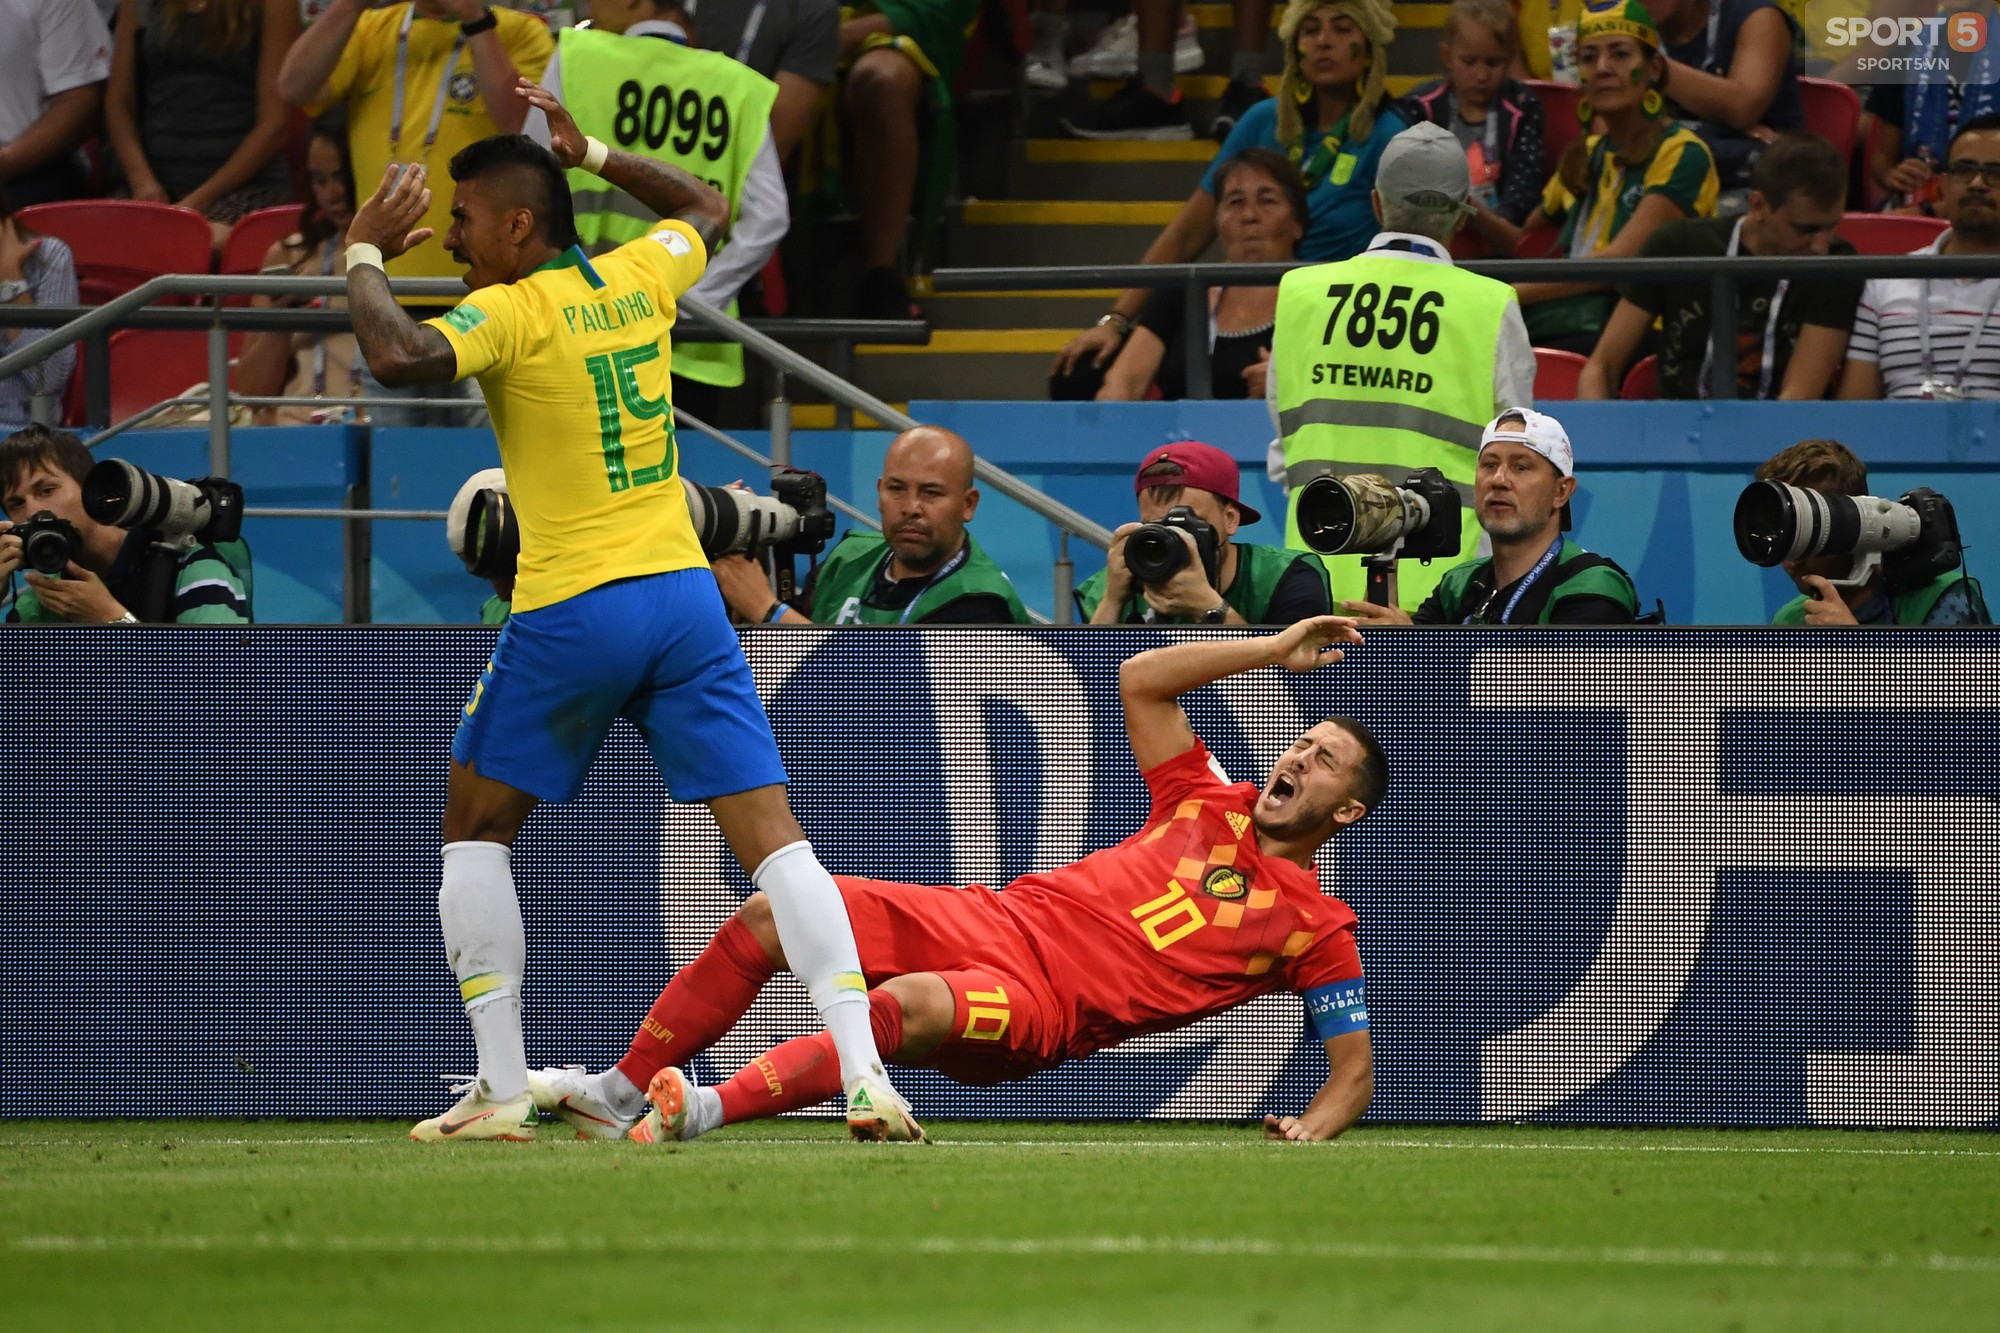 Thành tích của Hazard bằng cả tuyển Brazil cộng lại - Ảnh 3.